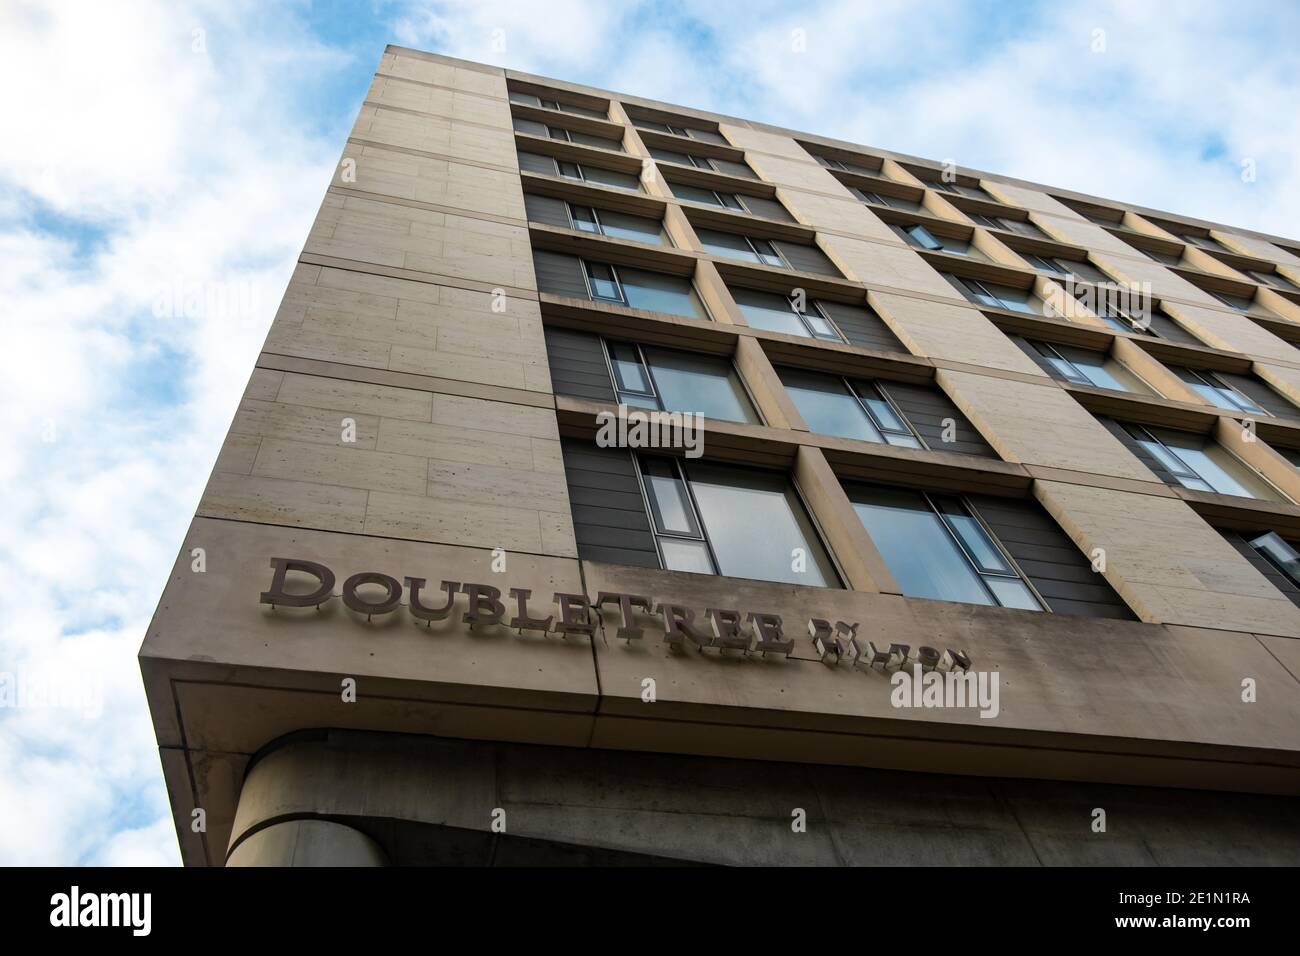 Londra - Hilton Doubletree hotel nel centro di Londra - un lusso globale catena alberghiera Foto Stock